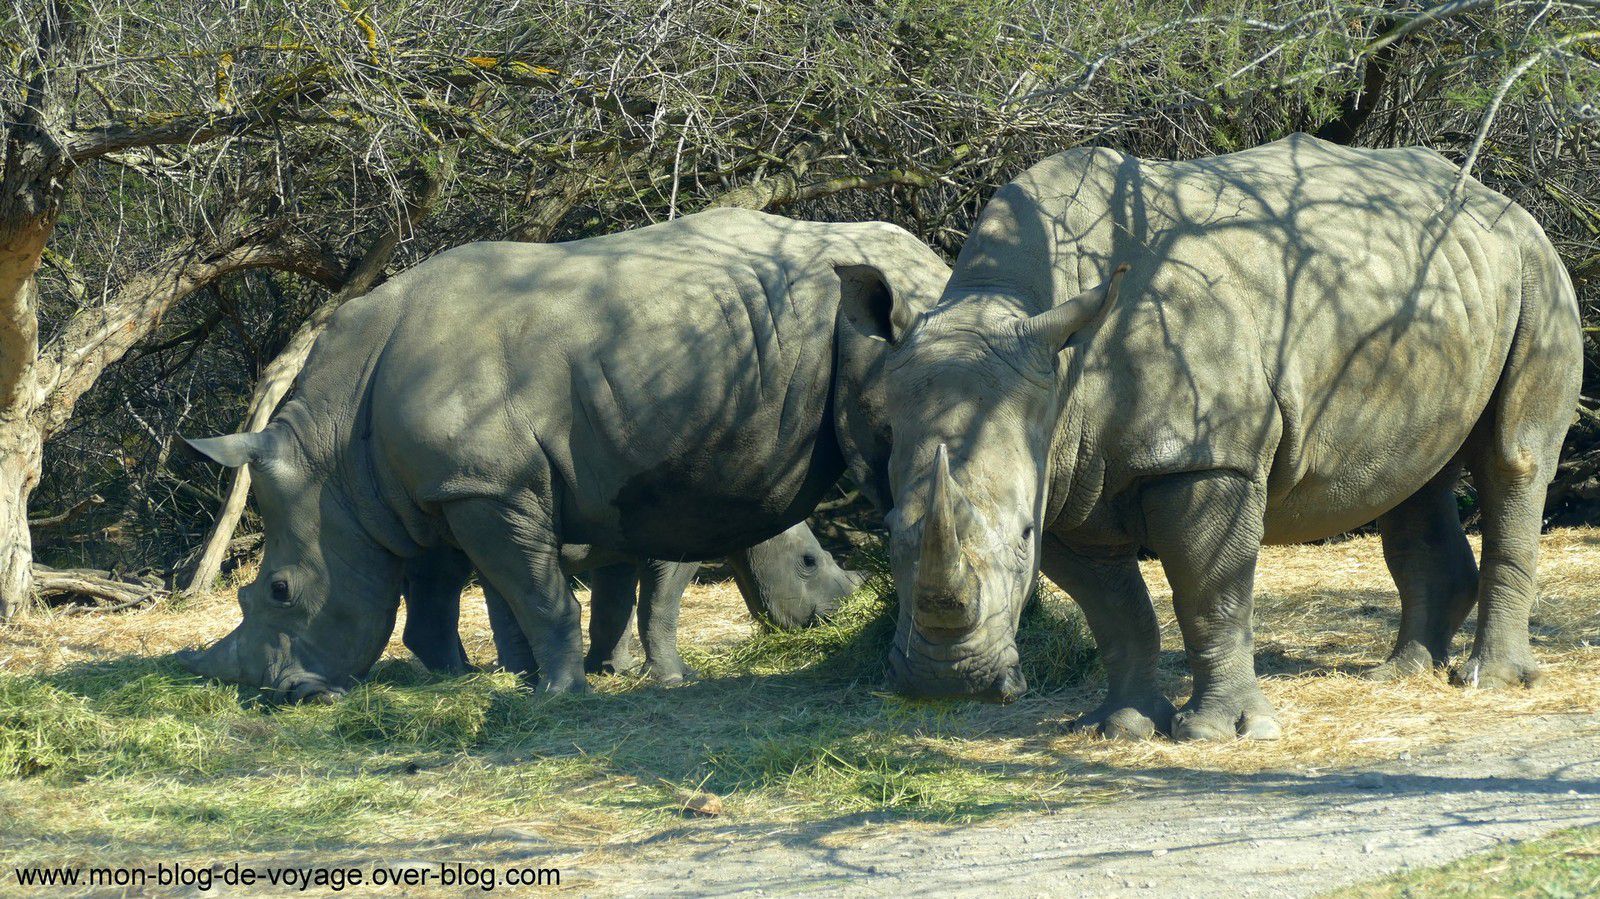 Les impressionnants rhinocéros blancs que les visiteurs peuvent découvrir dans ce parc en toute sécurité (mars 2019, images personnelles)